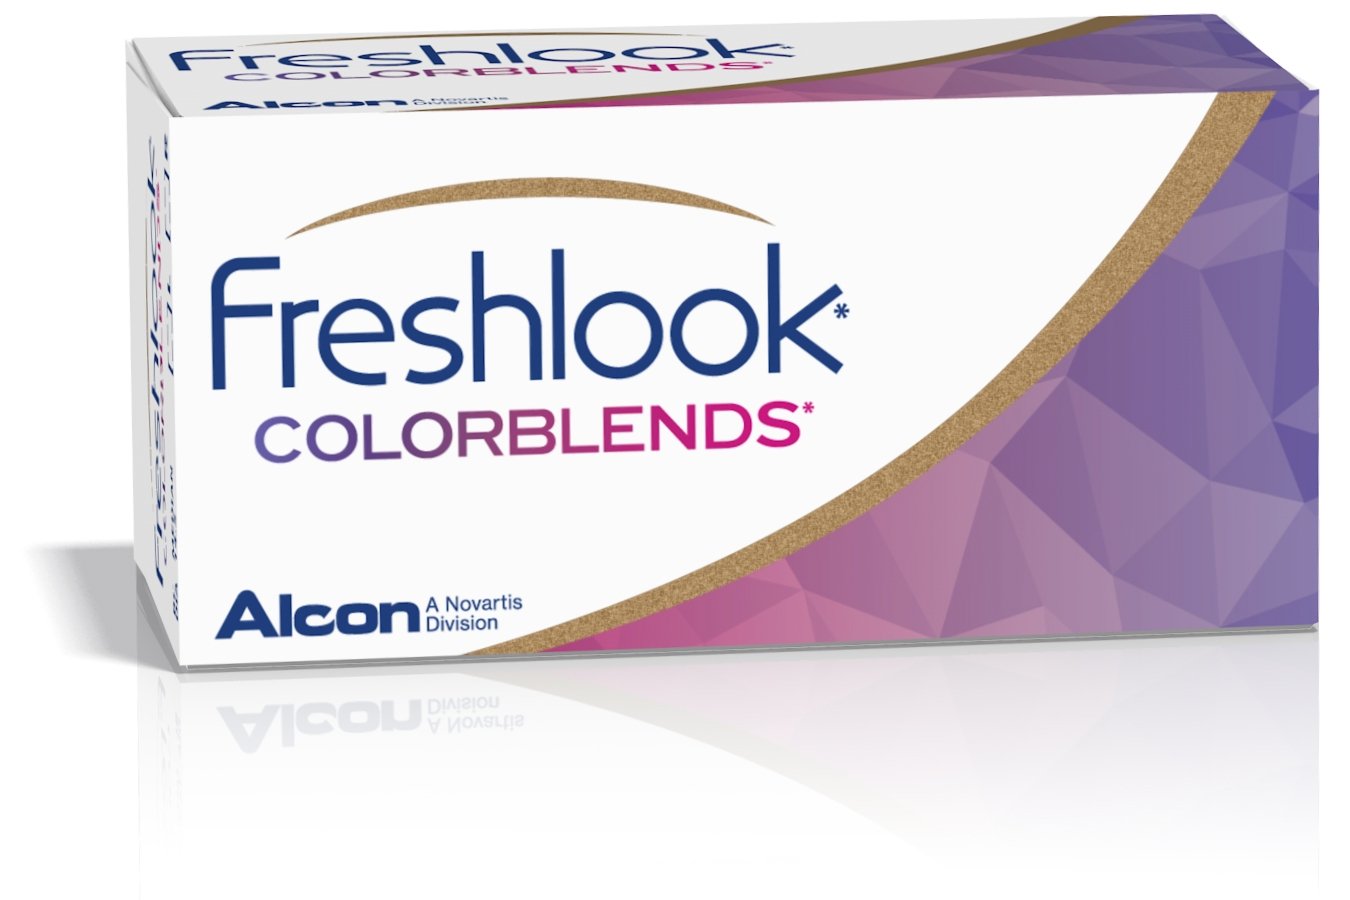 Das Bild zeigt die Verpackung der farbigen Kontaktlinse Freshlook Colorblends.